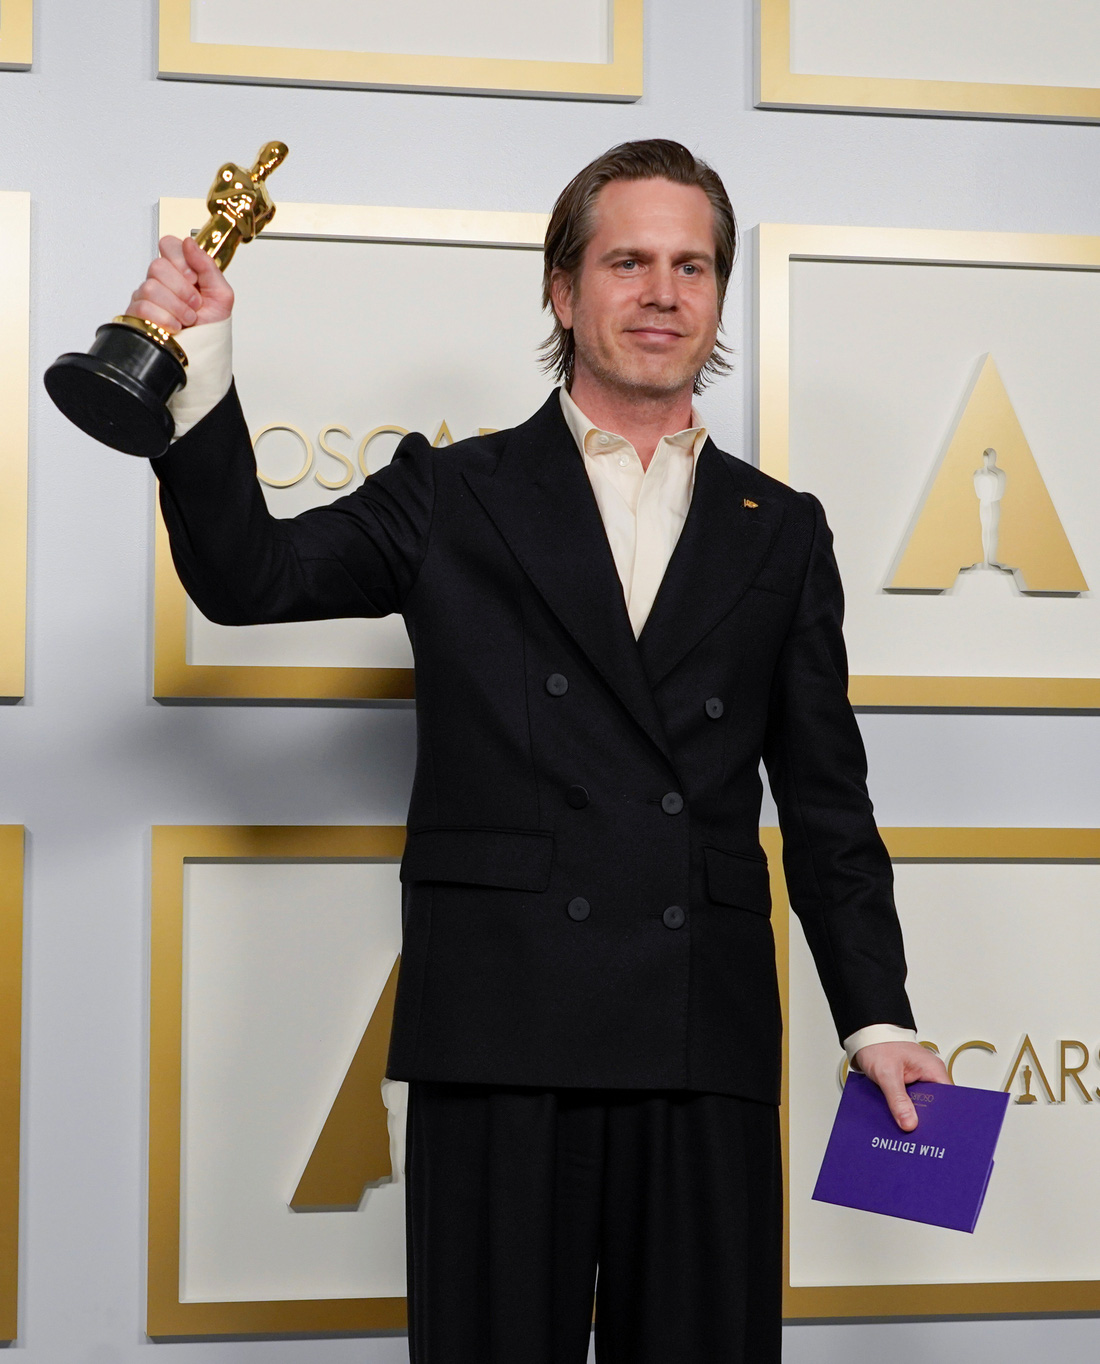 Oscar 2021: Nomadland giành 3 tượng vàng cho phim, đạo diễn và nữ chính xuất sắc - Ảnh 9.